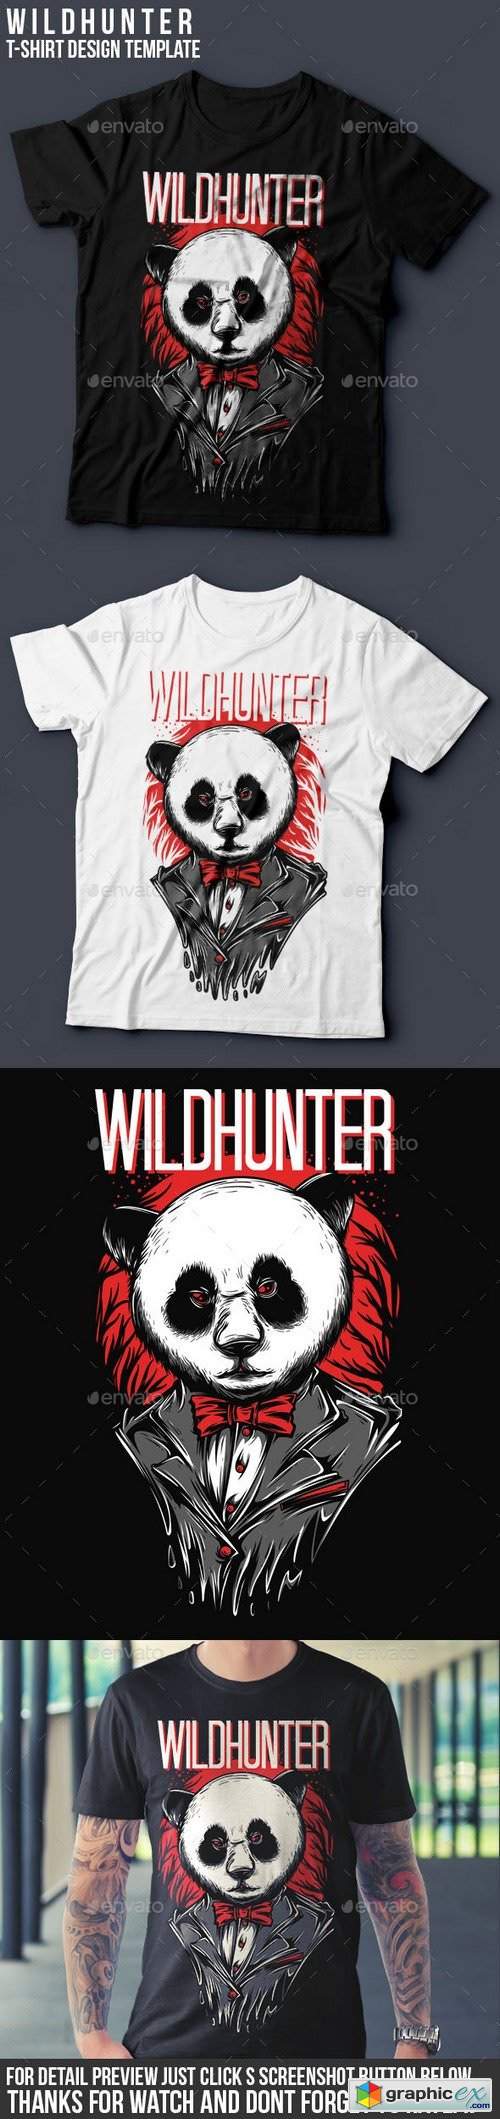 Wildhunter T-Shirt Design